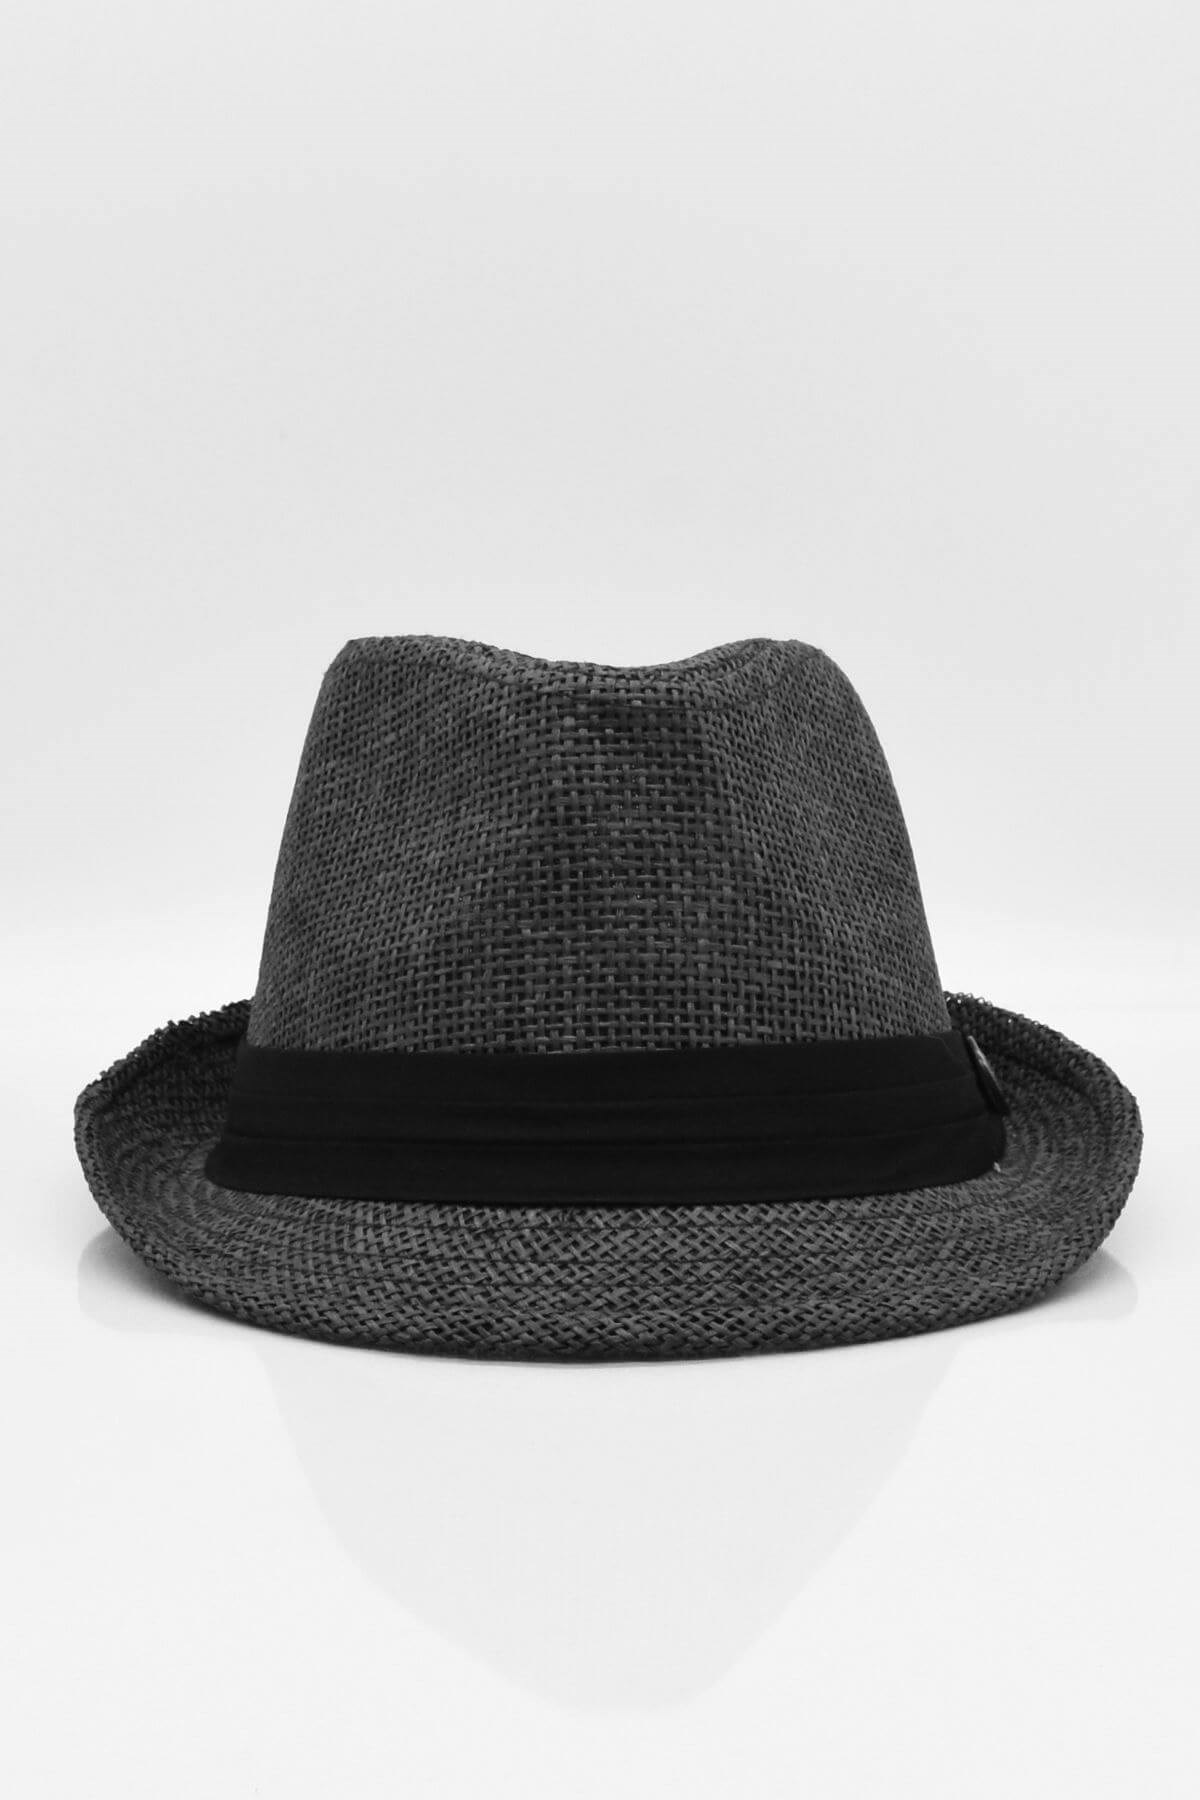 Külah Erkek Fötr Hasır Şapka Yazlık Şapka - Siyah KLH0772